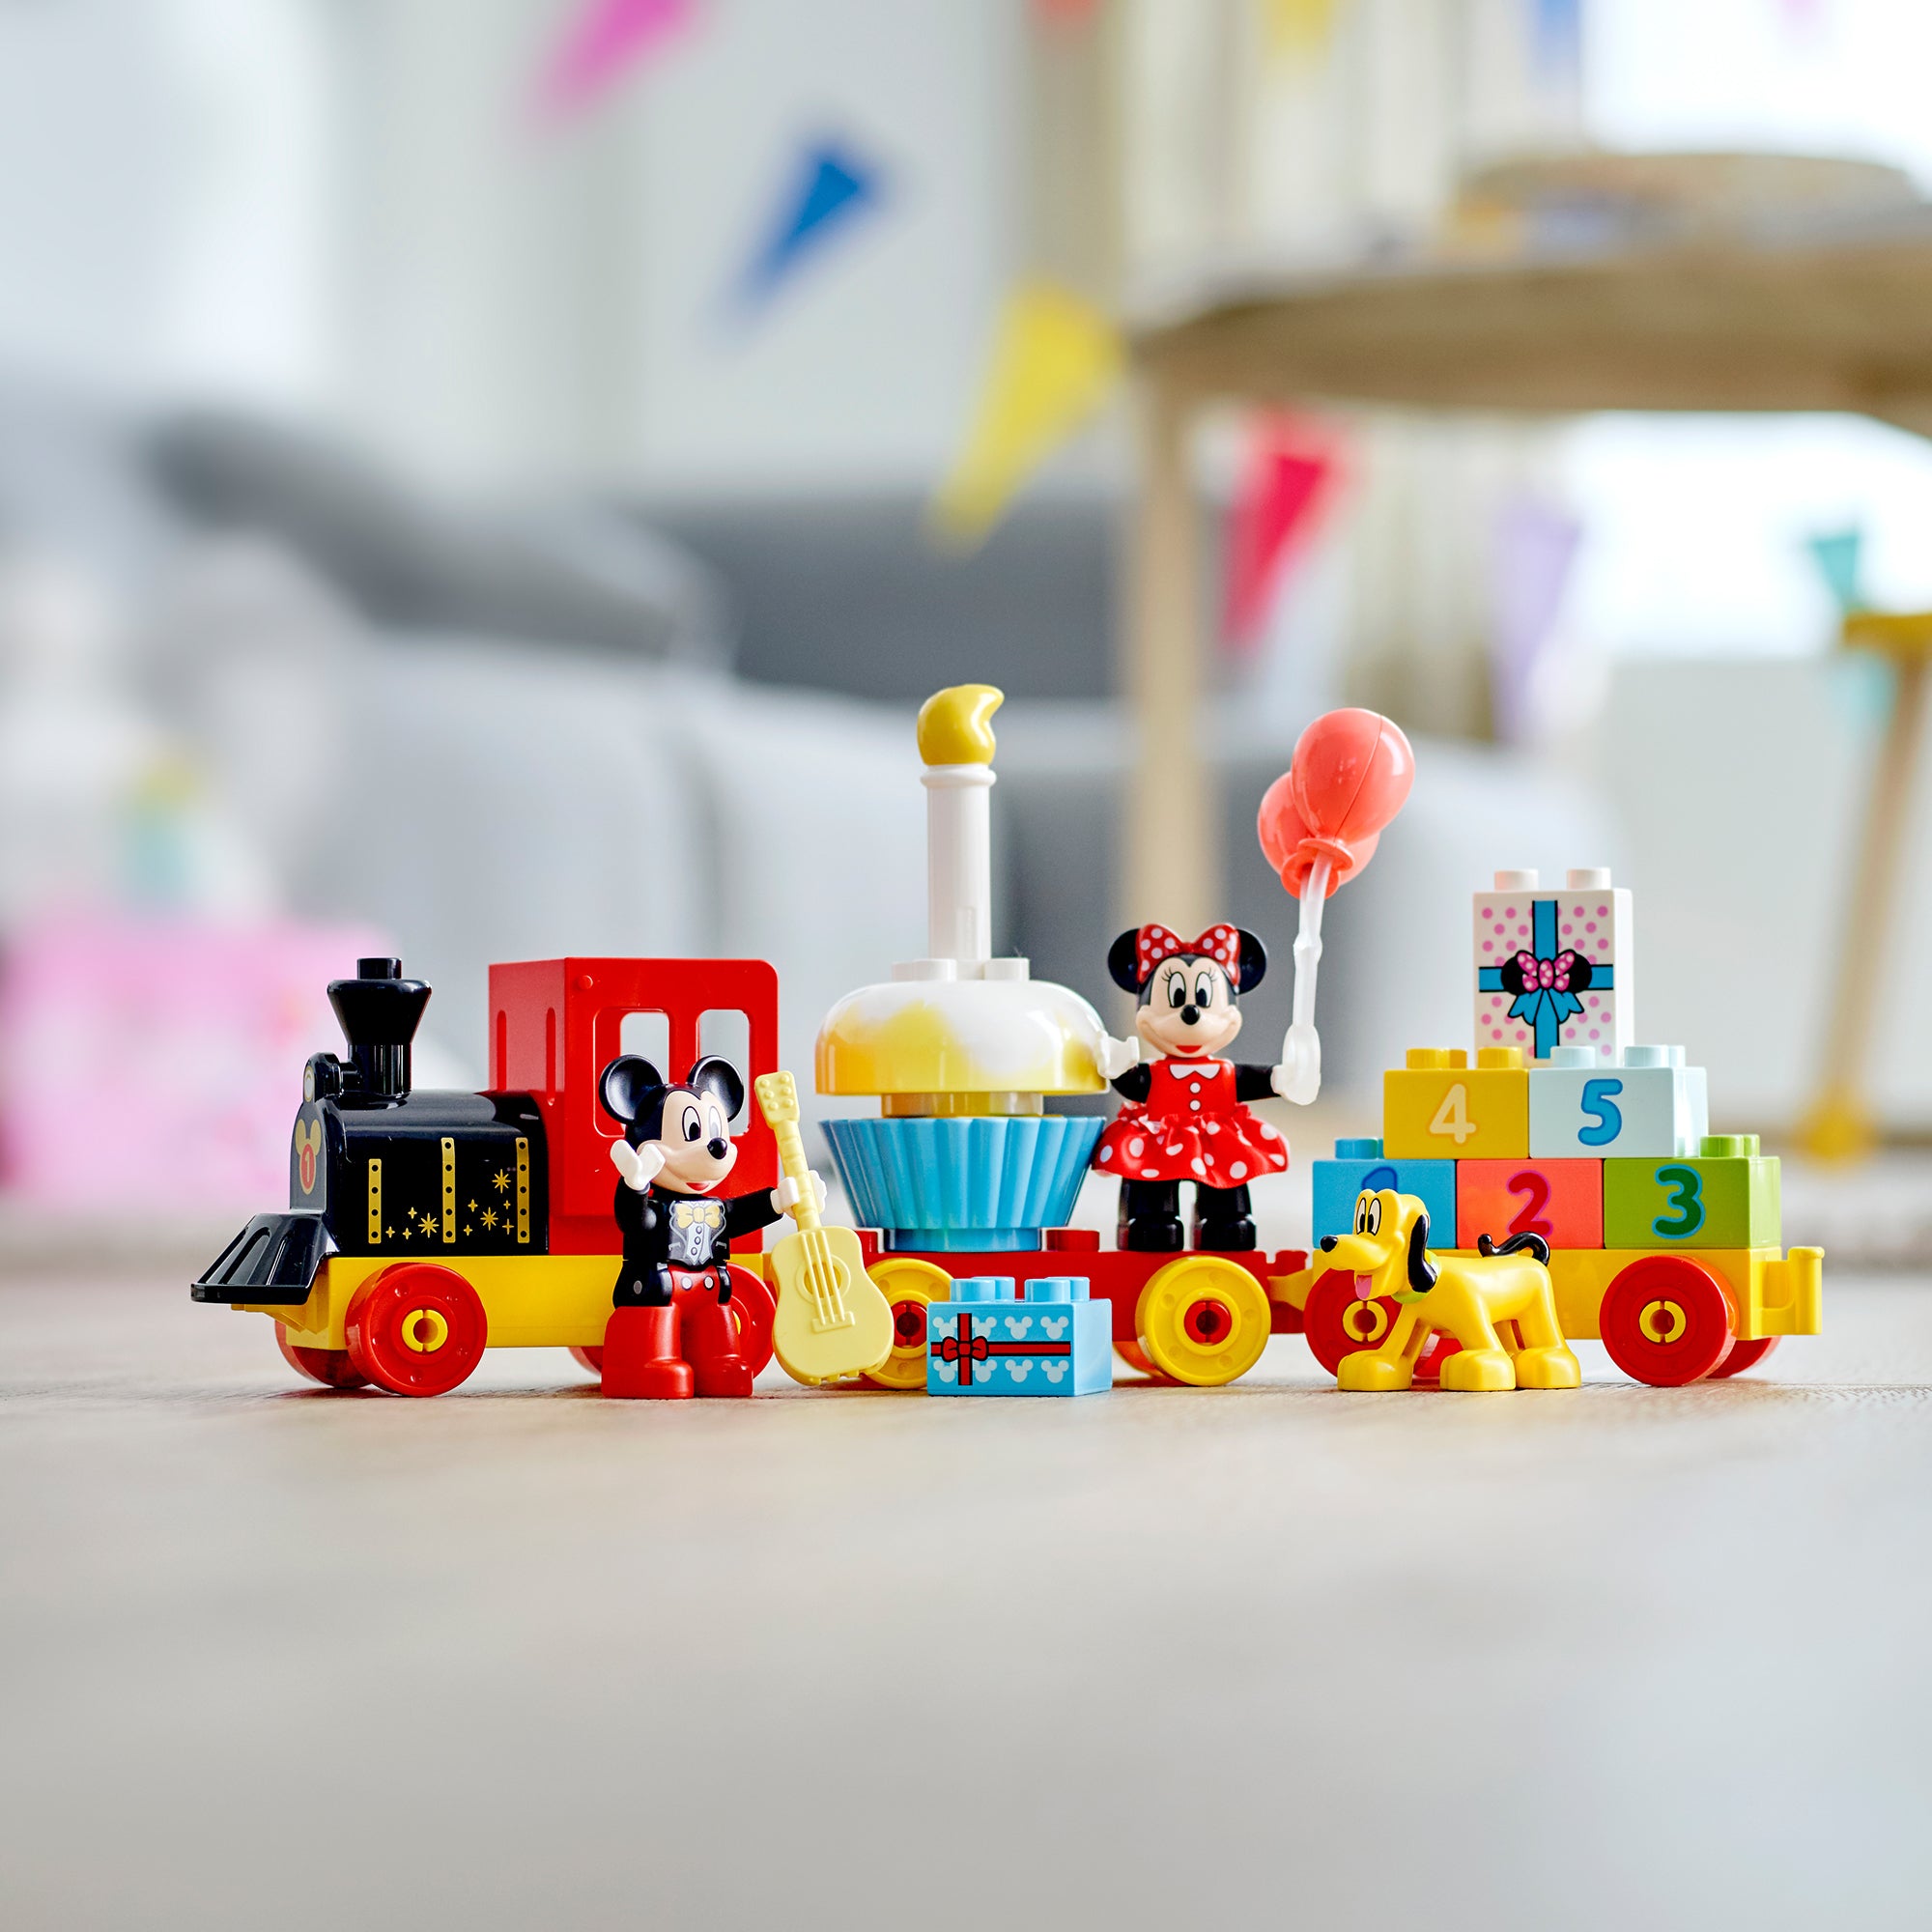 10941 LEGO® Duplo - Il treno del compleanno di Topolino e Minnie